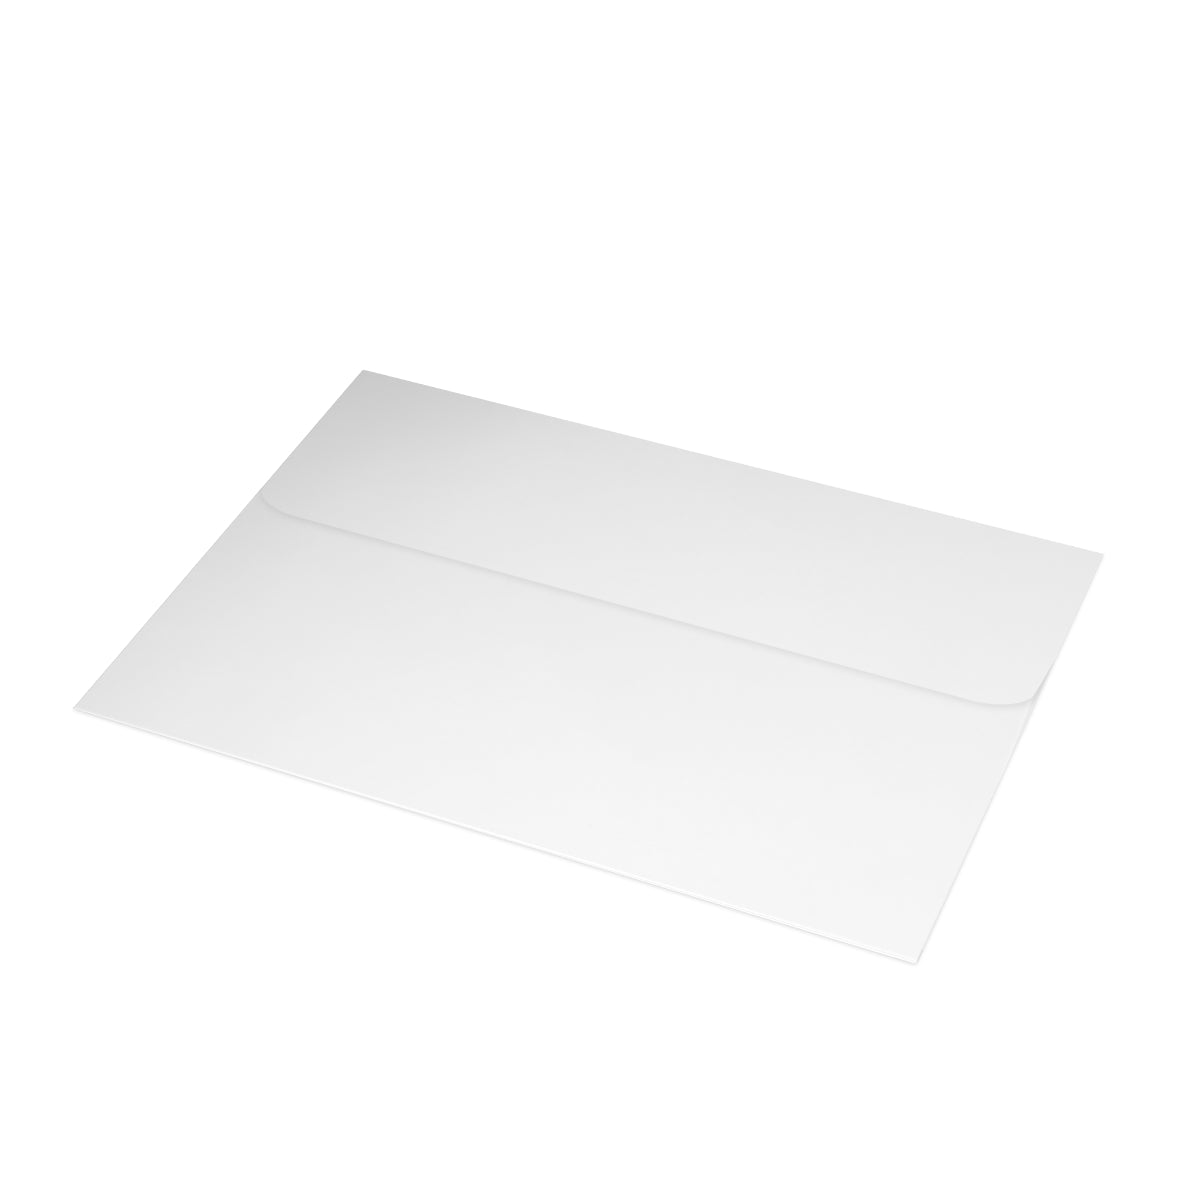 Philadelphia Folded Matte Notecards + Envelopes (10pcs)